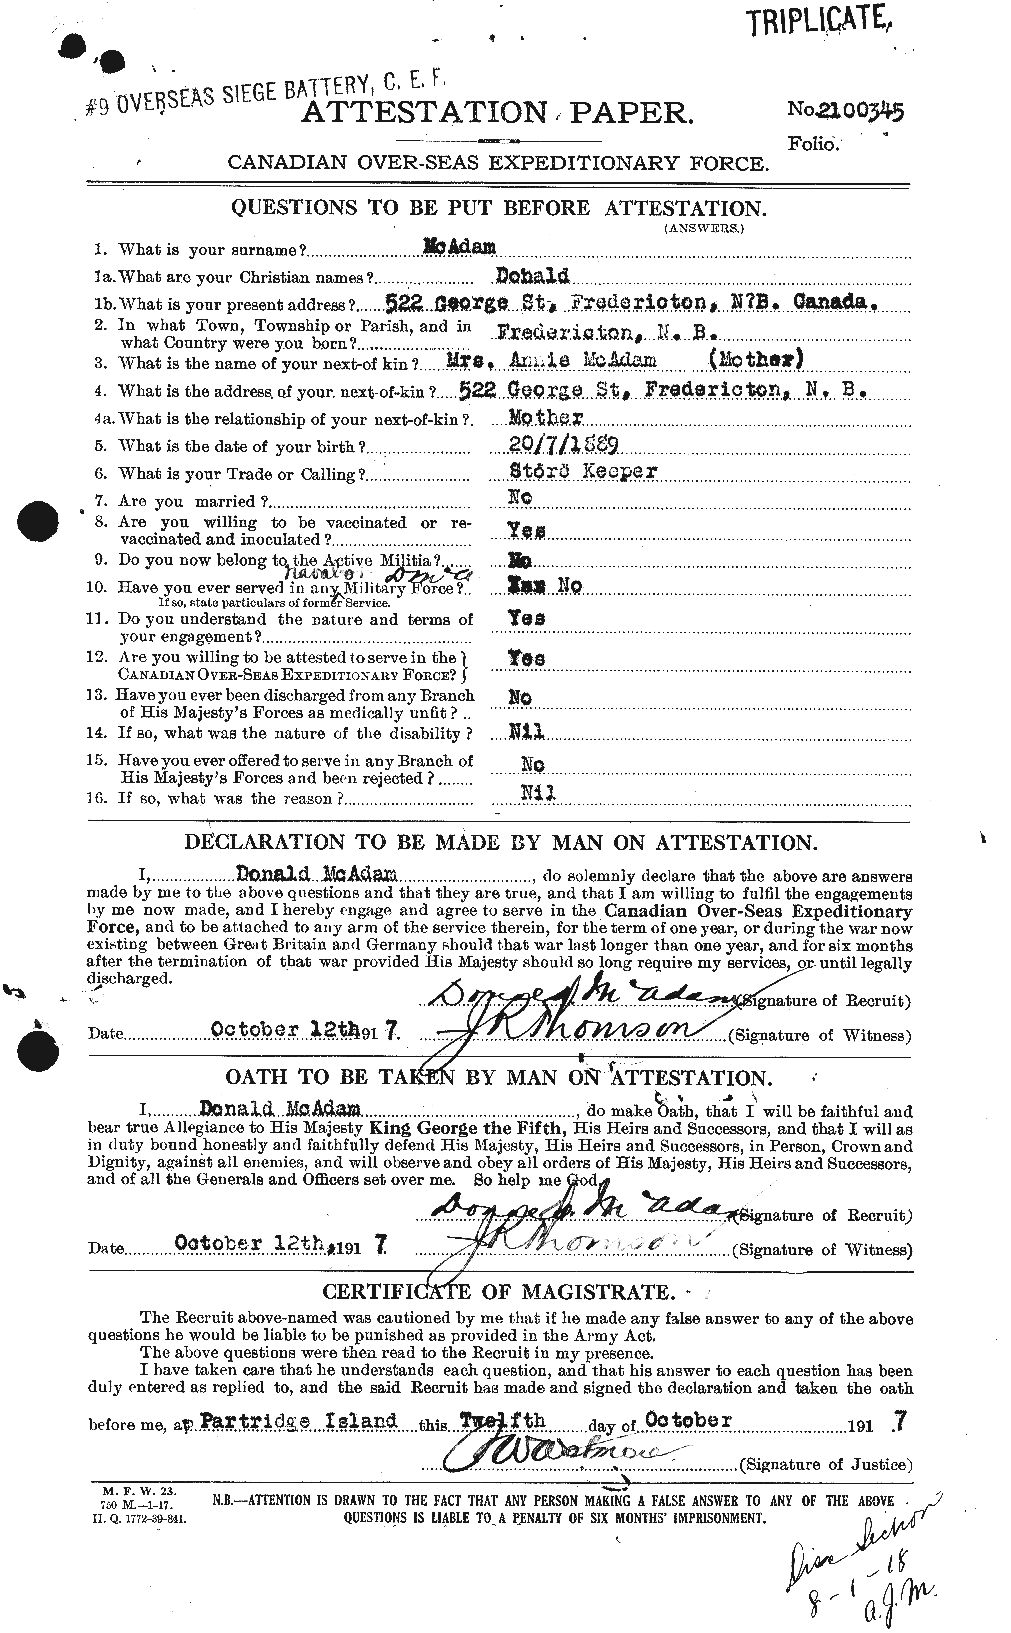 Dossiers du Personnel de la Première Guerre mondiale - CEC 130461a